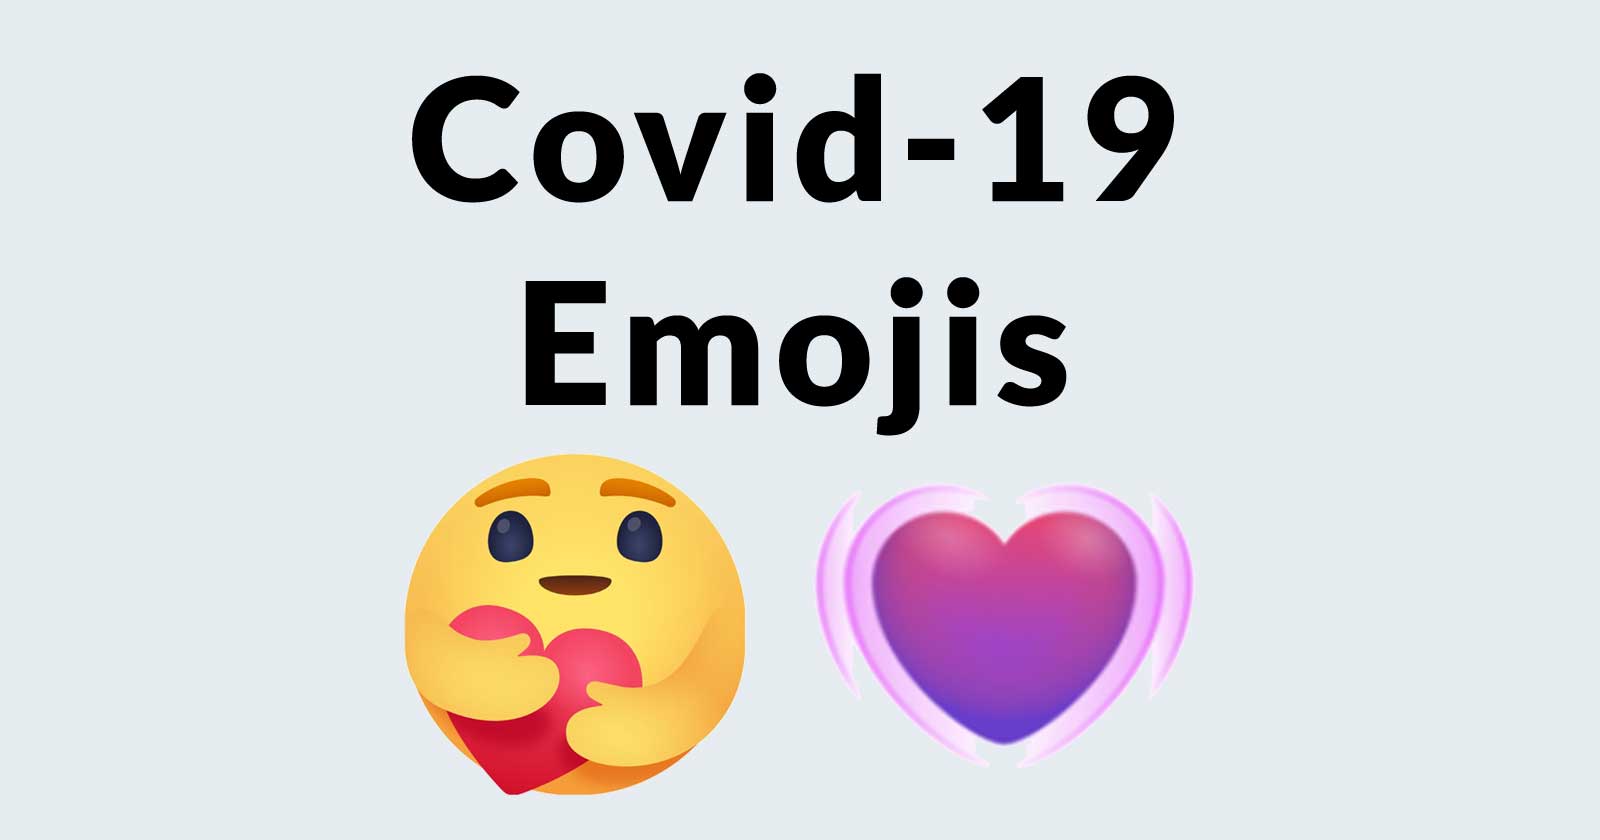 facebook-covid-19-care-emojis-5ea92d4288ccc.jpg